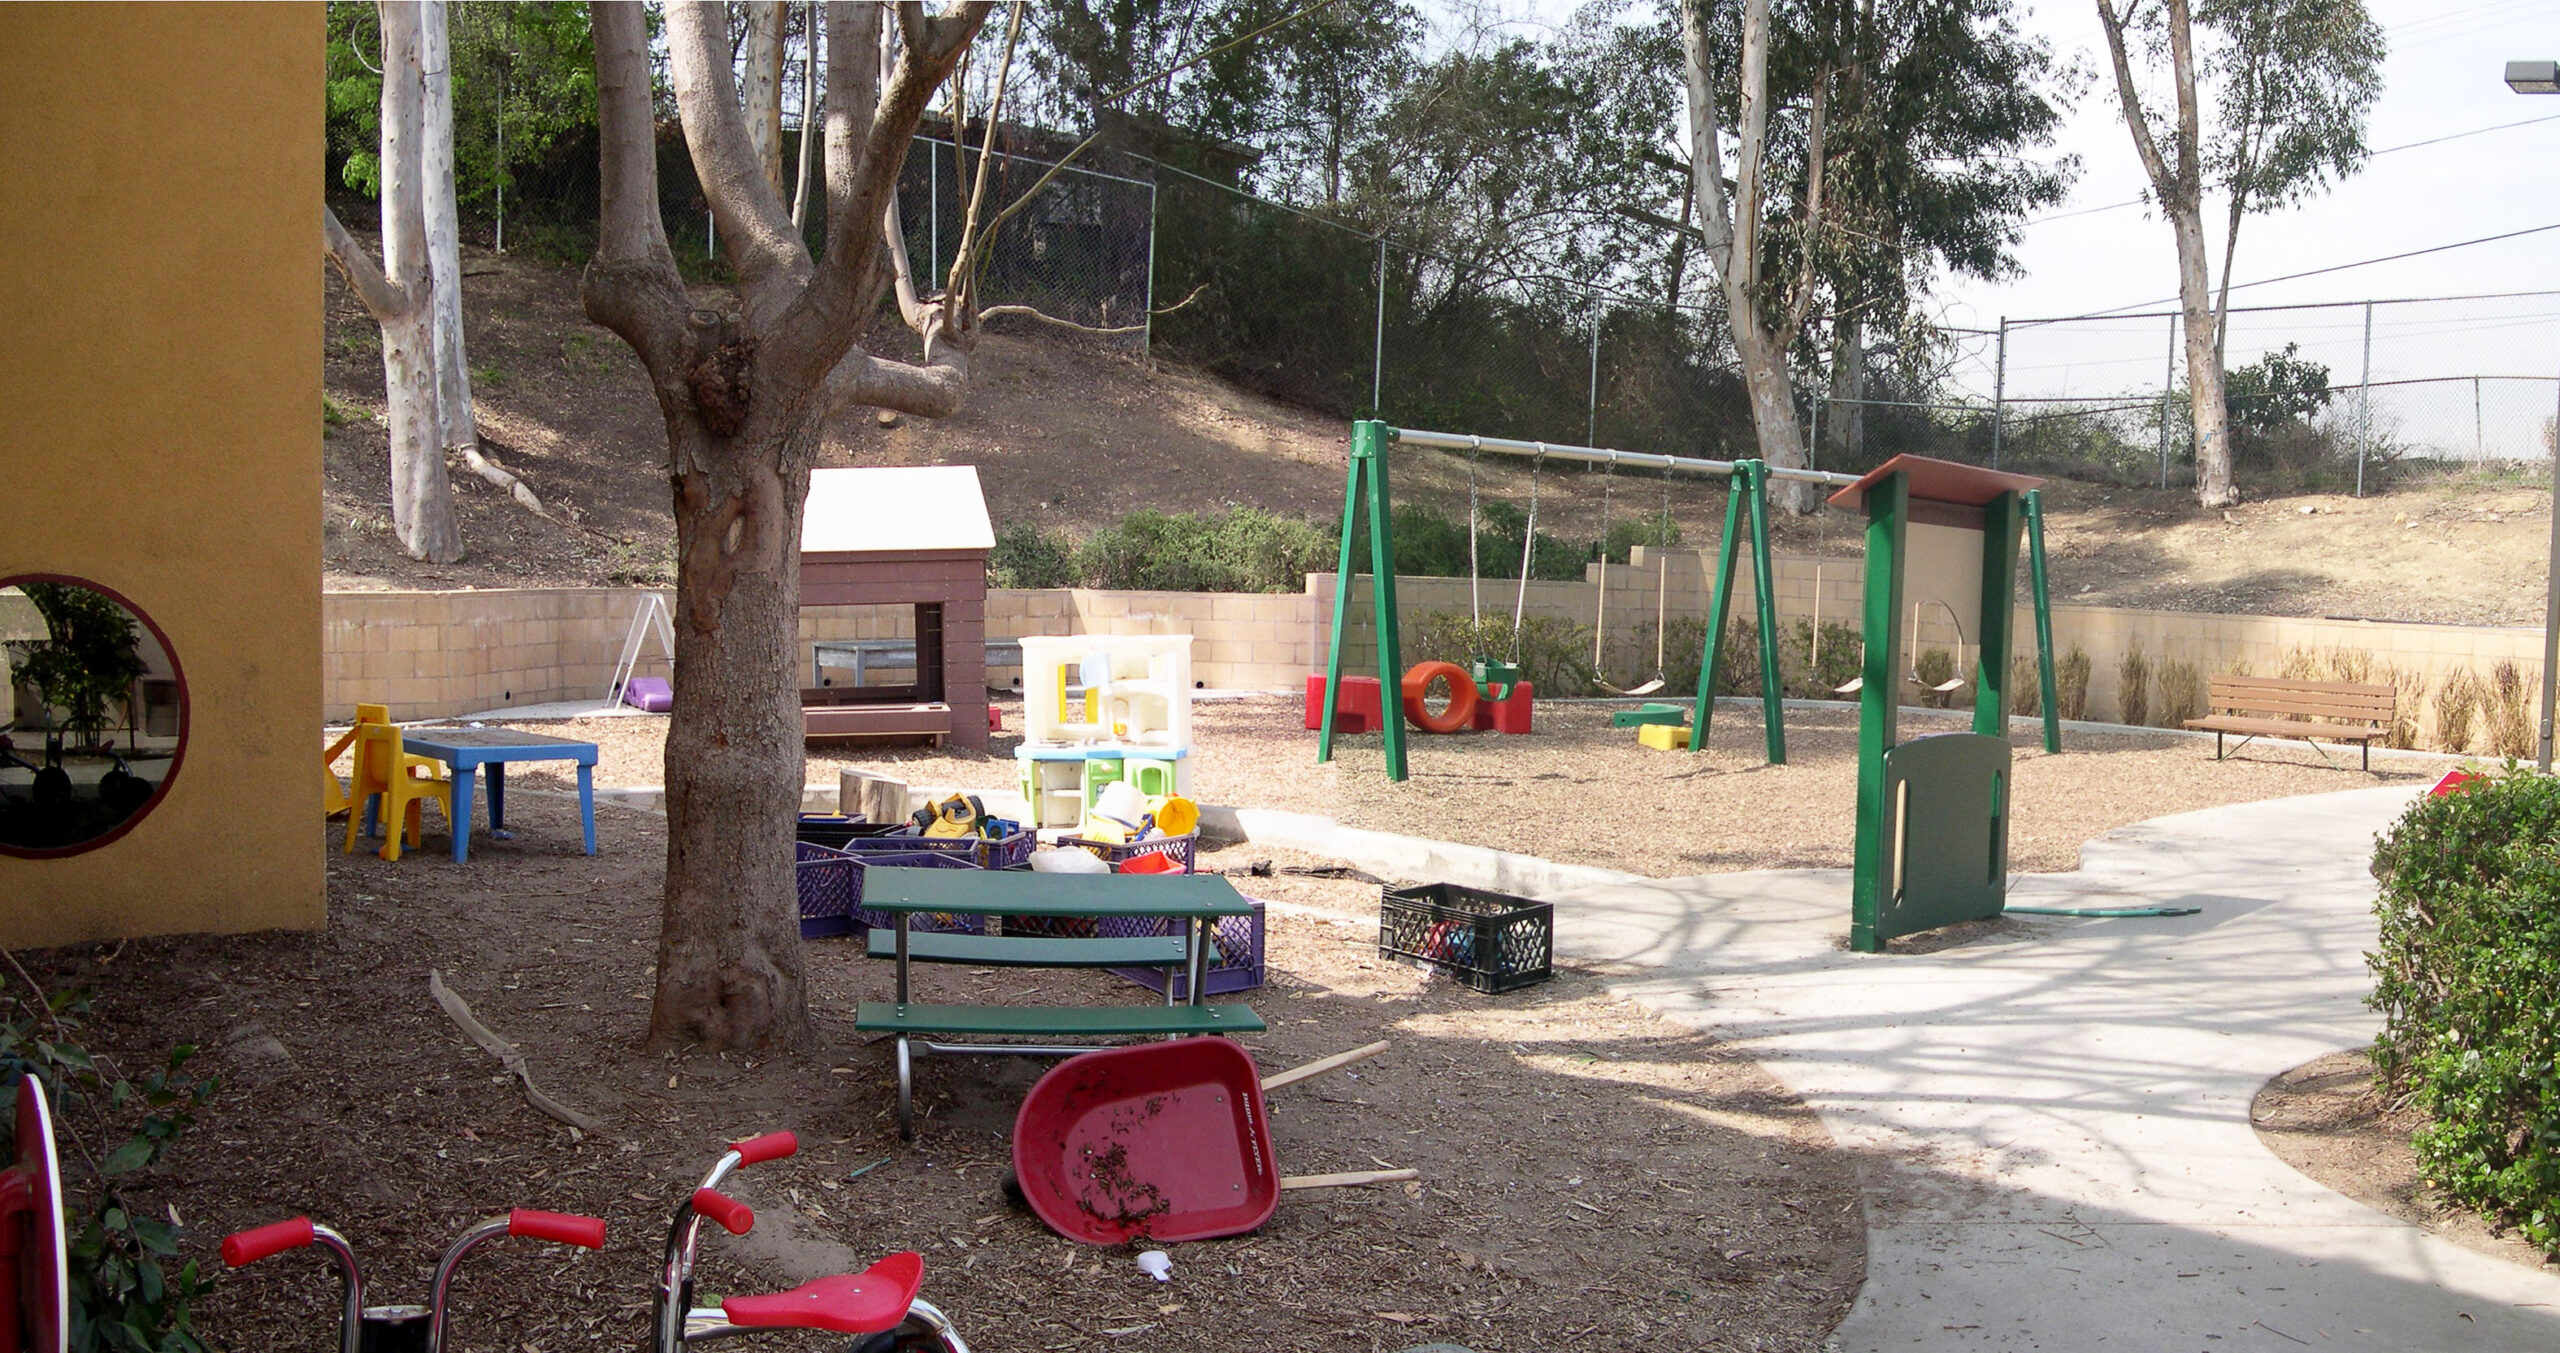 Milton & Harriet Goldberg Recreation Area